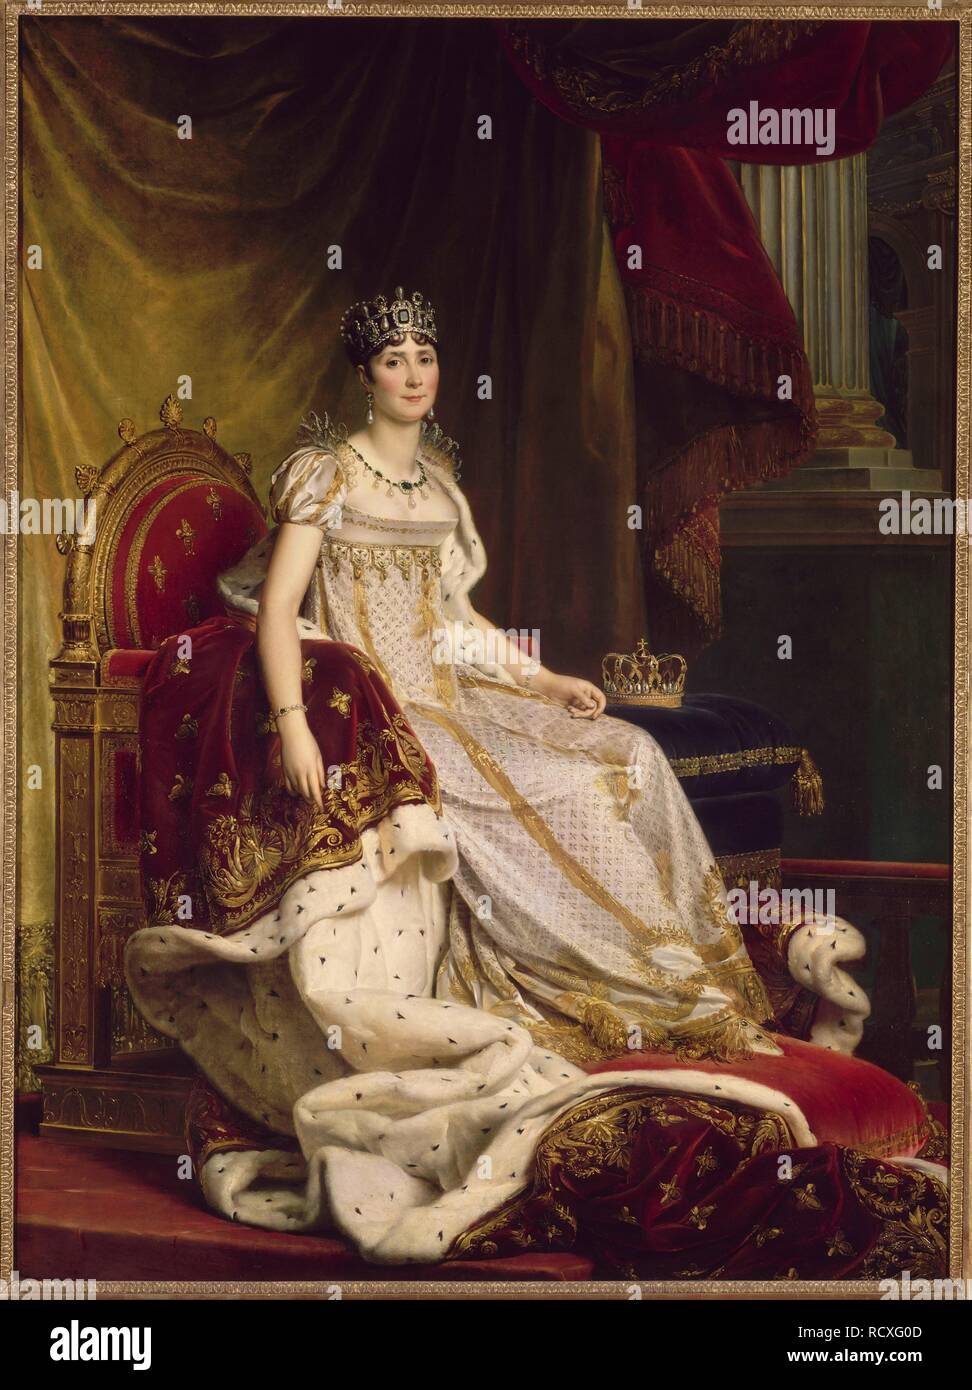 Joséphine de Beauharnais, die erste Frau von Napoléon Bonaparte (1763-1814) im Coronation Kostüm. Museum: Musée National du Château de Fontainebleau. Autor: GERARD, François. Stockfoto